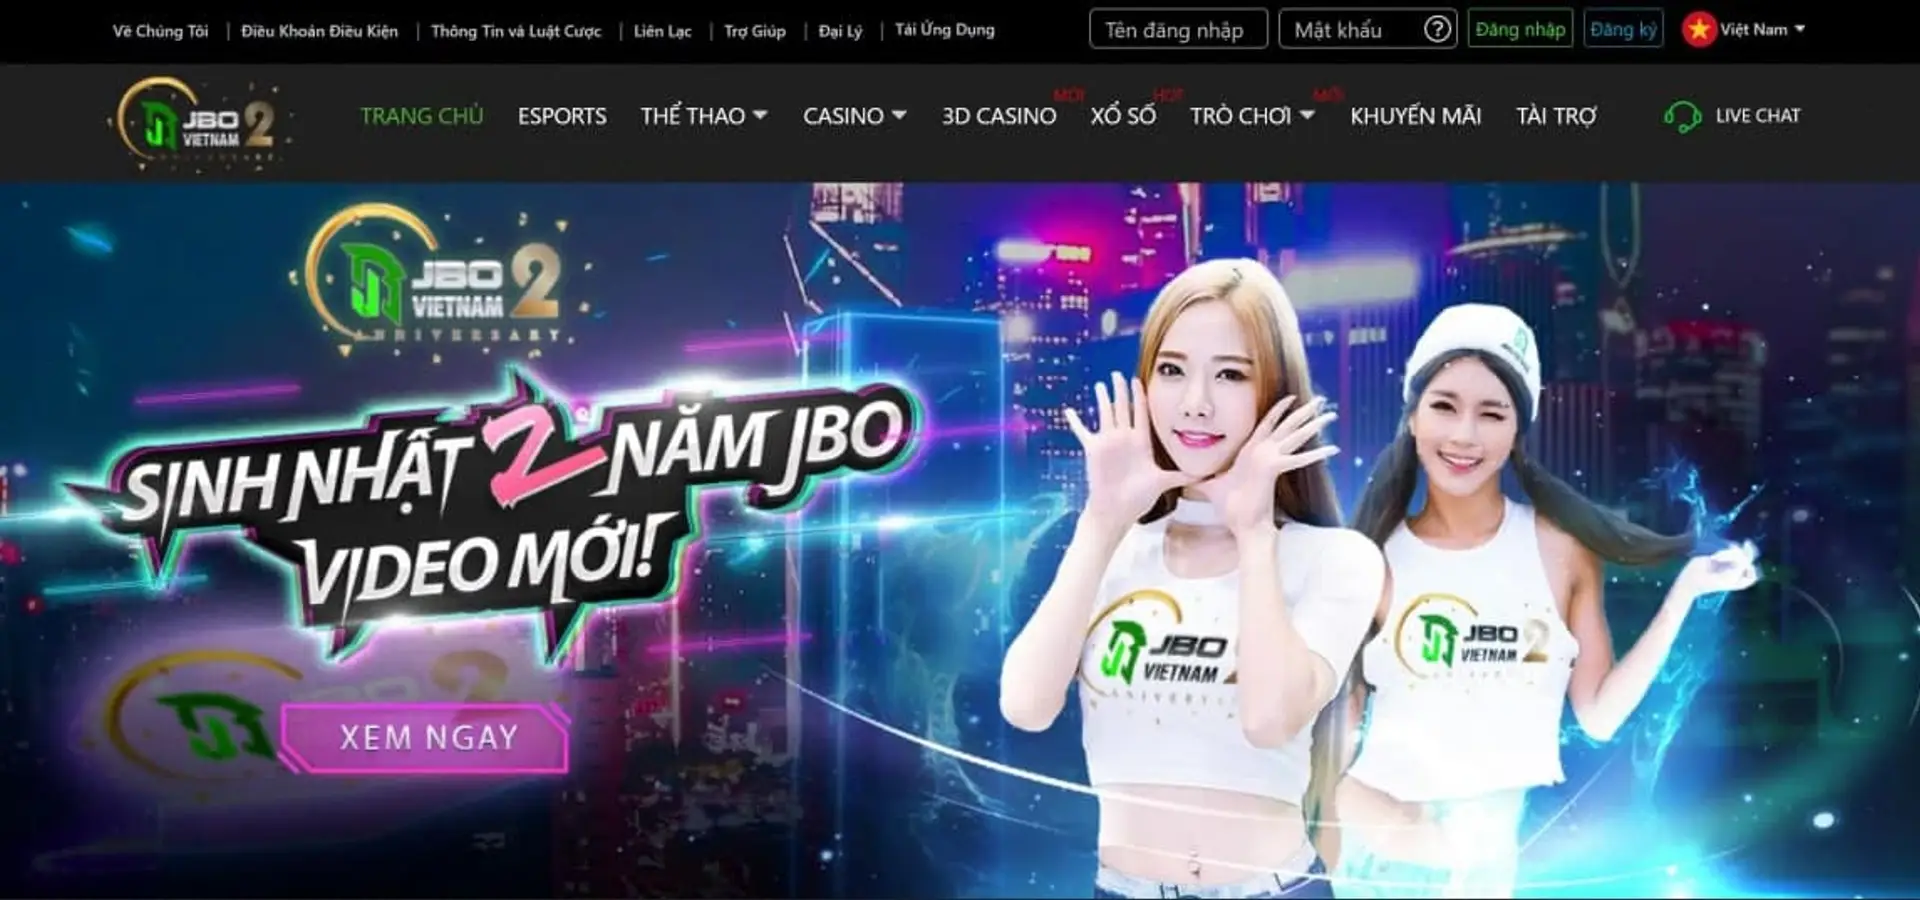 Jbo casino online